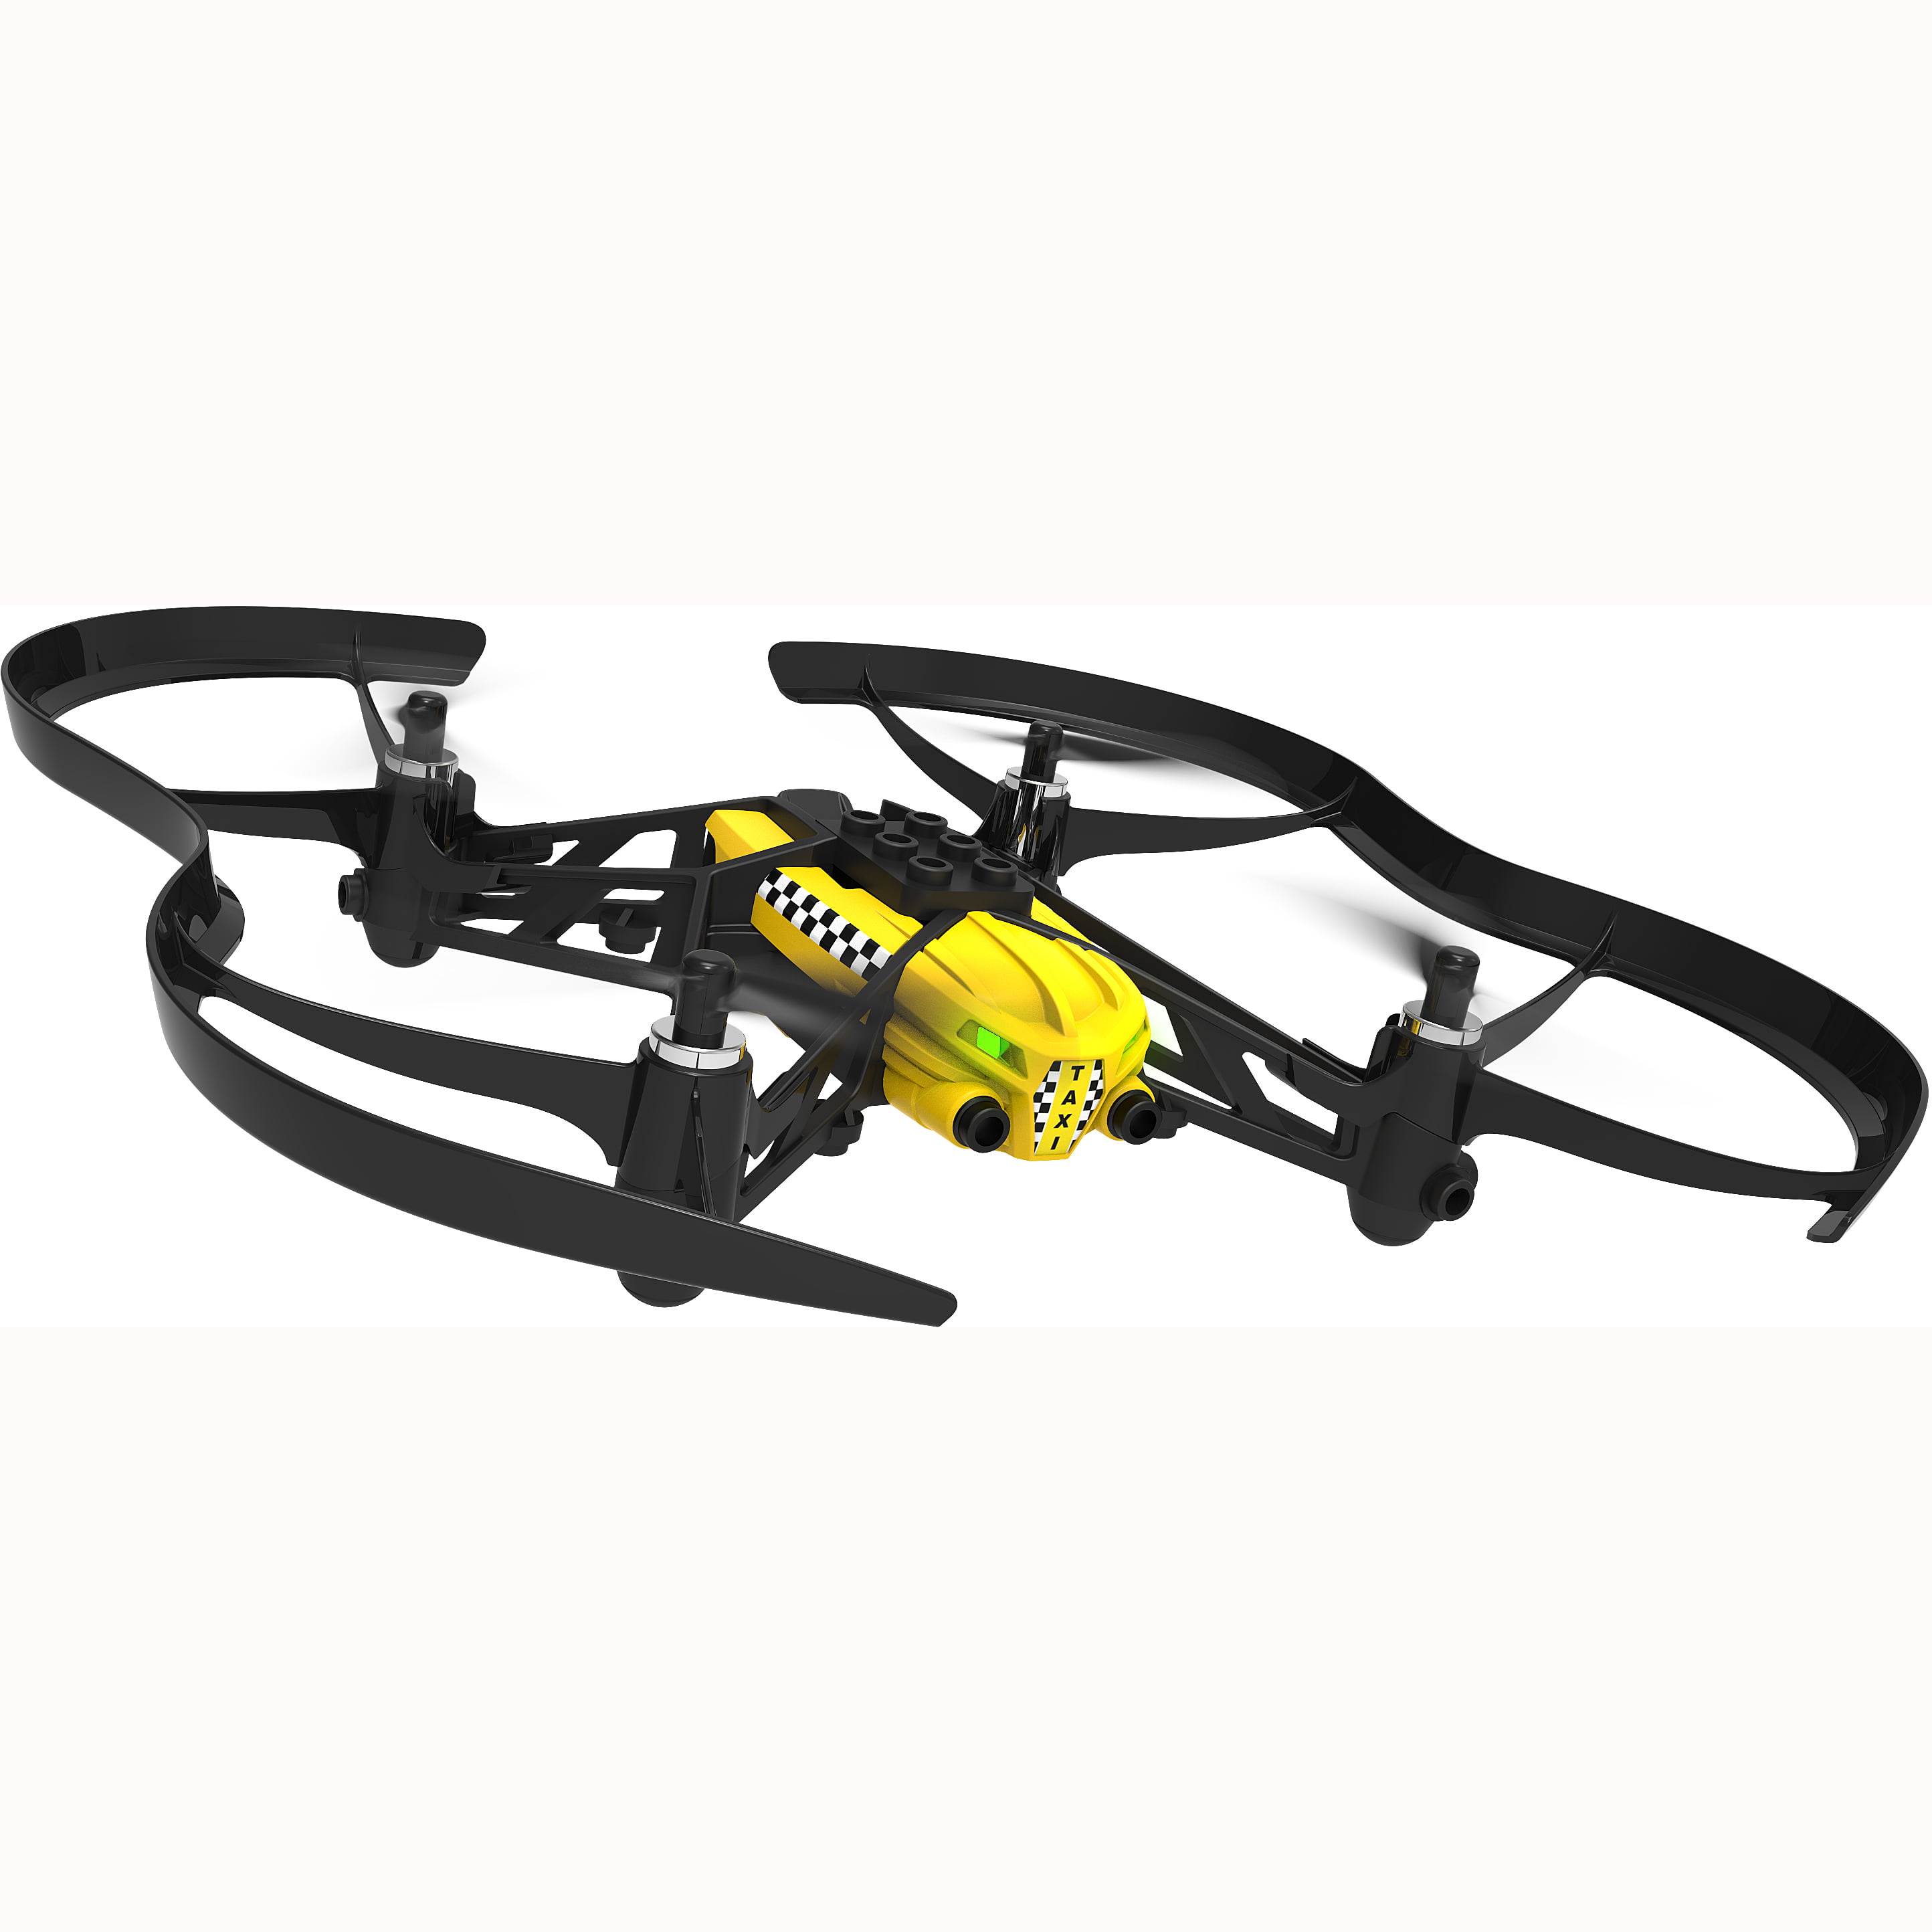 drone parrot travis